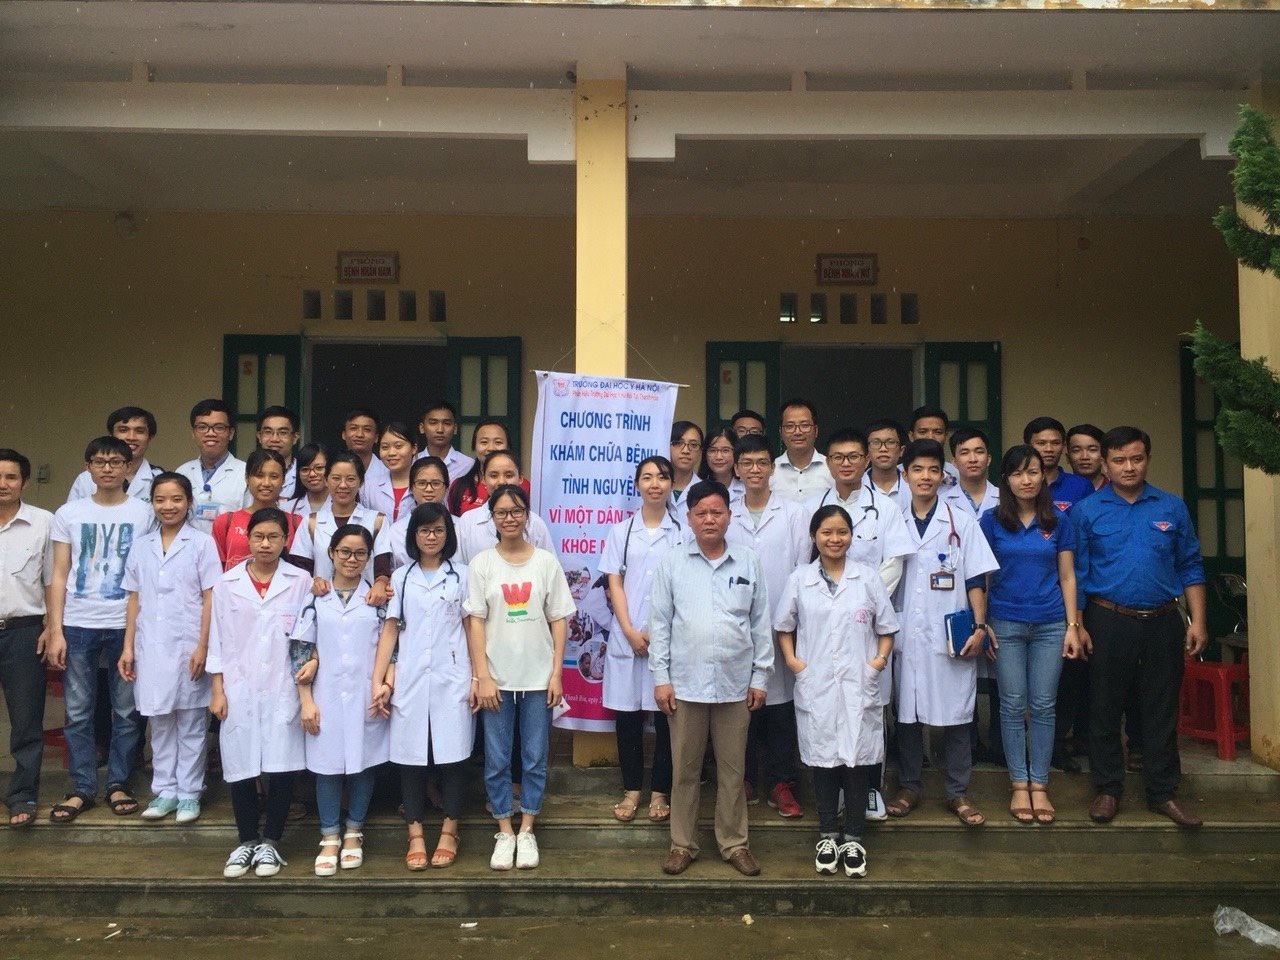 Khám chữa bệnh tình nguyện tại Triệu Sơn